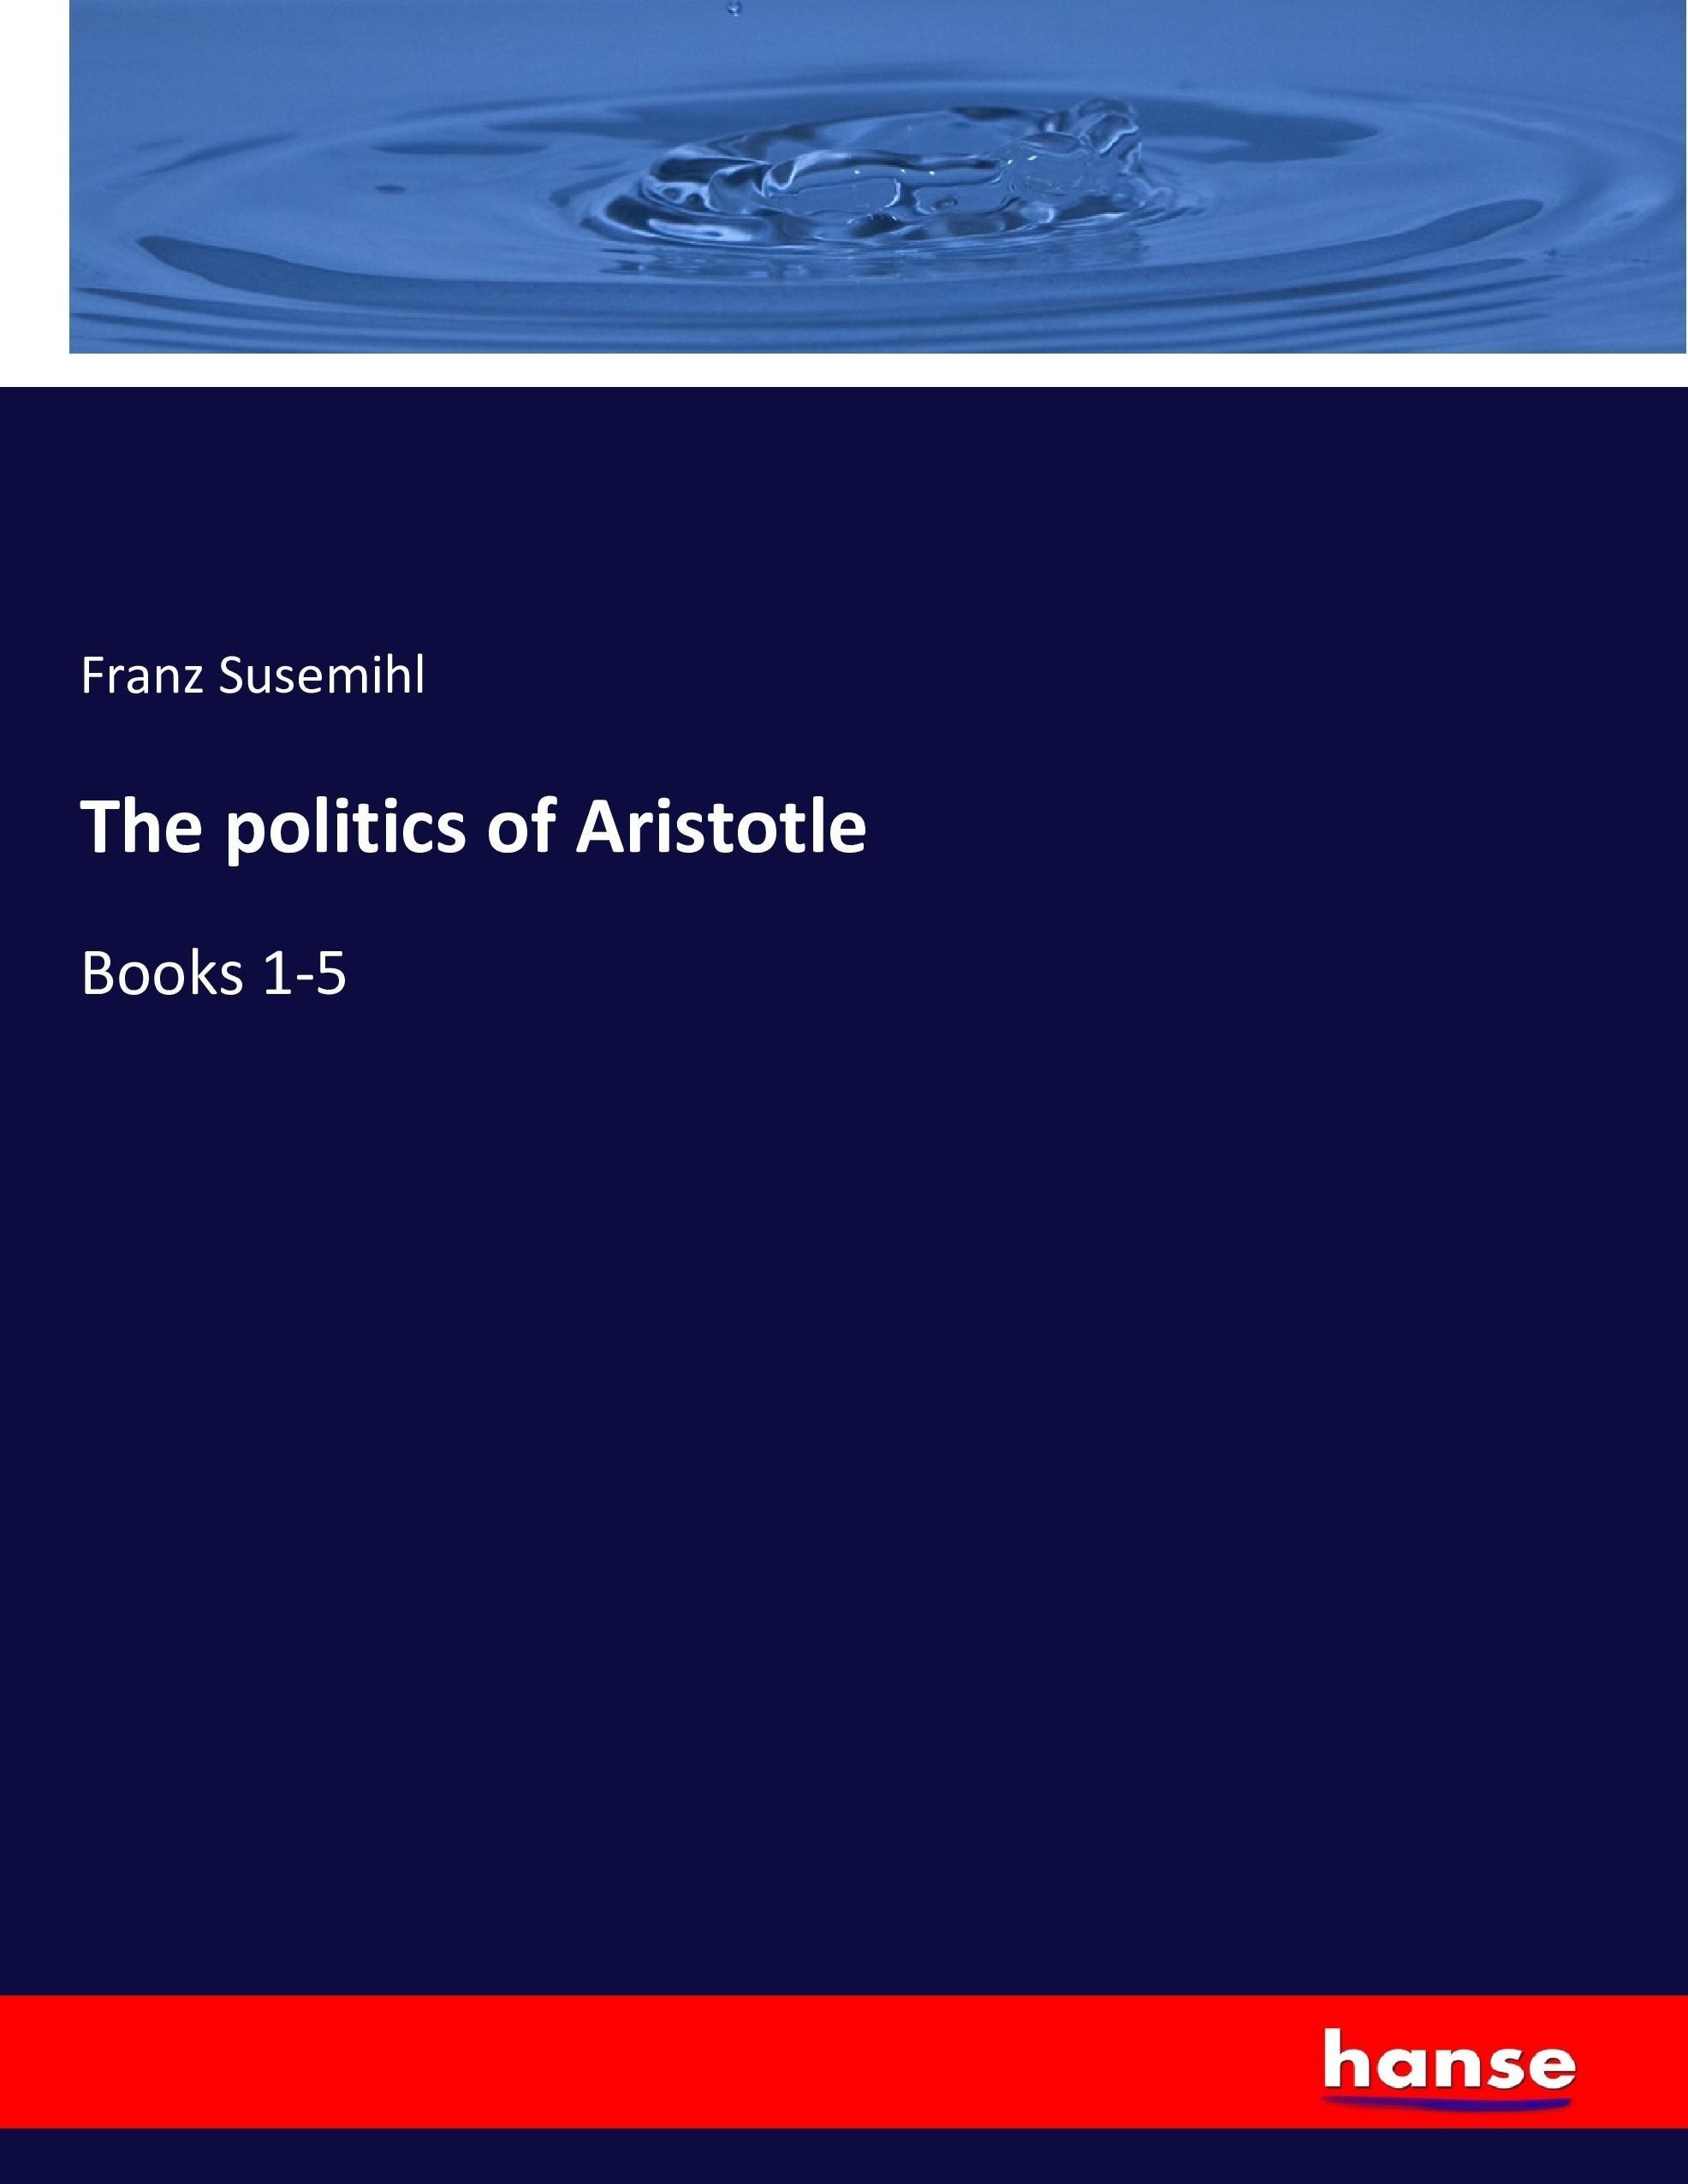 The politics of Aristotle - Susemihl, Franz